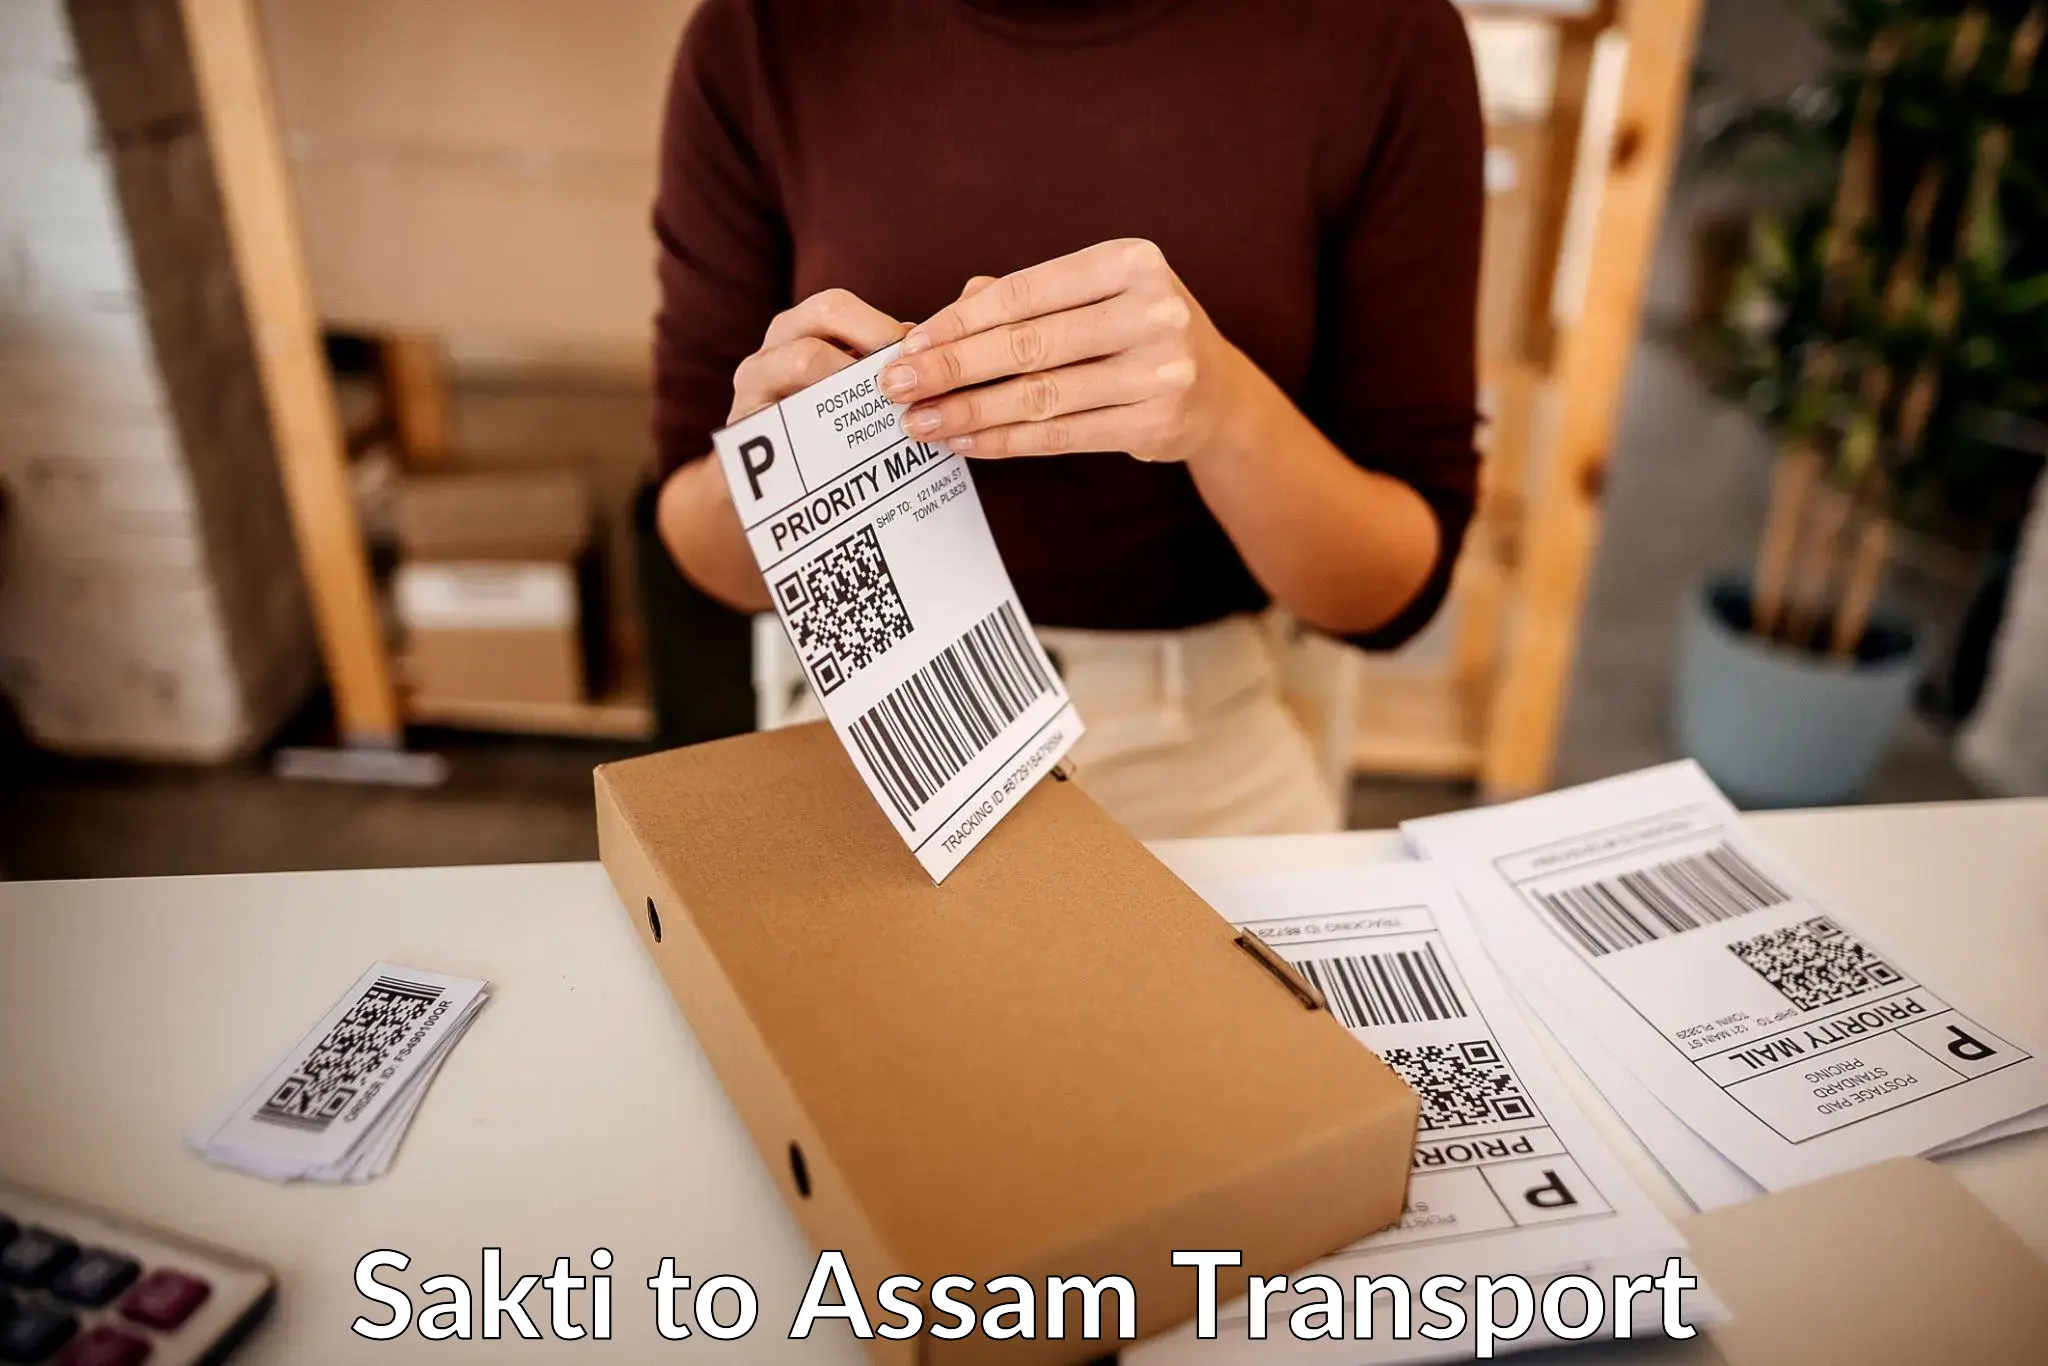 Transport in sharing in Sakti to Teok